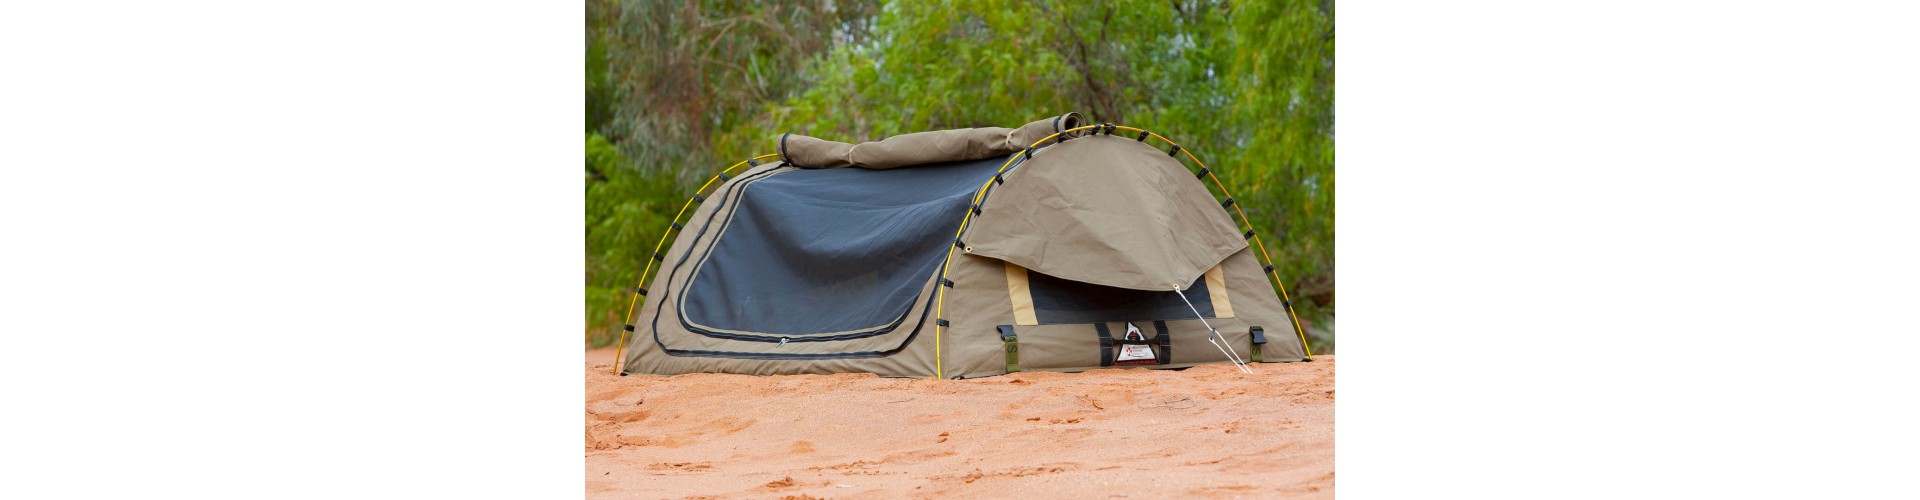 Уют и комфорт: Лучшие шатры для длительных охотничьих походов